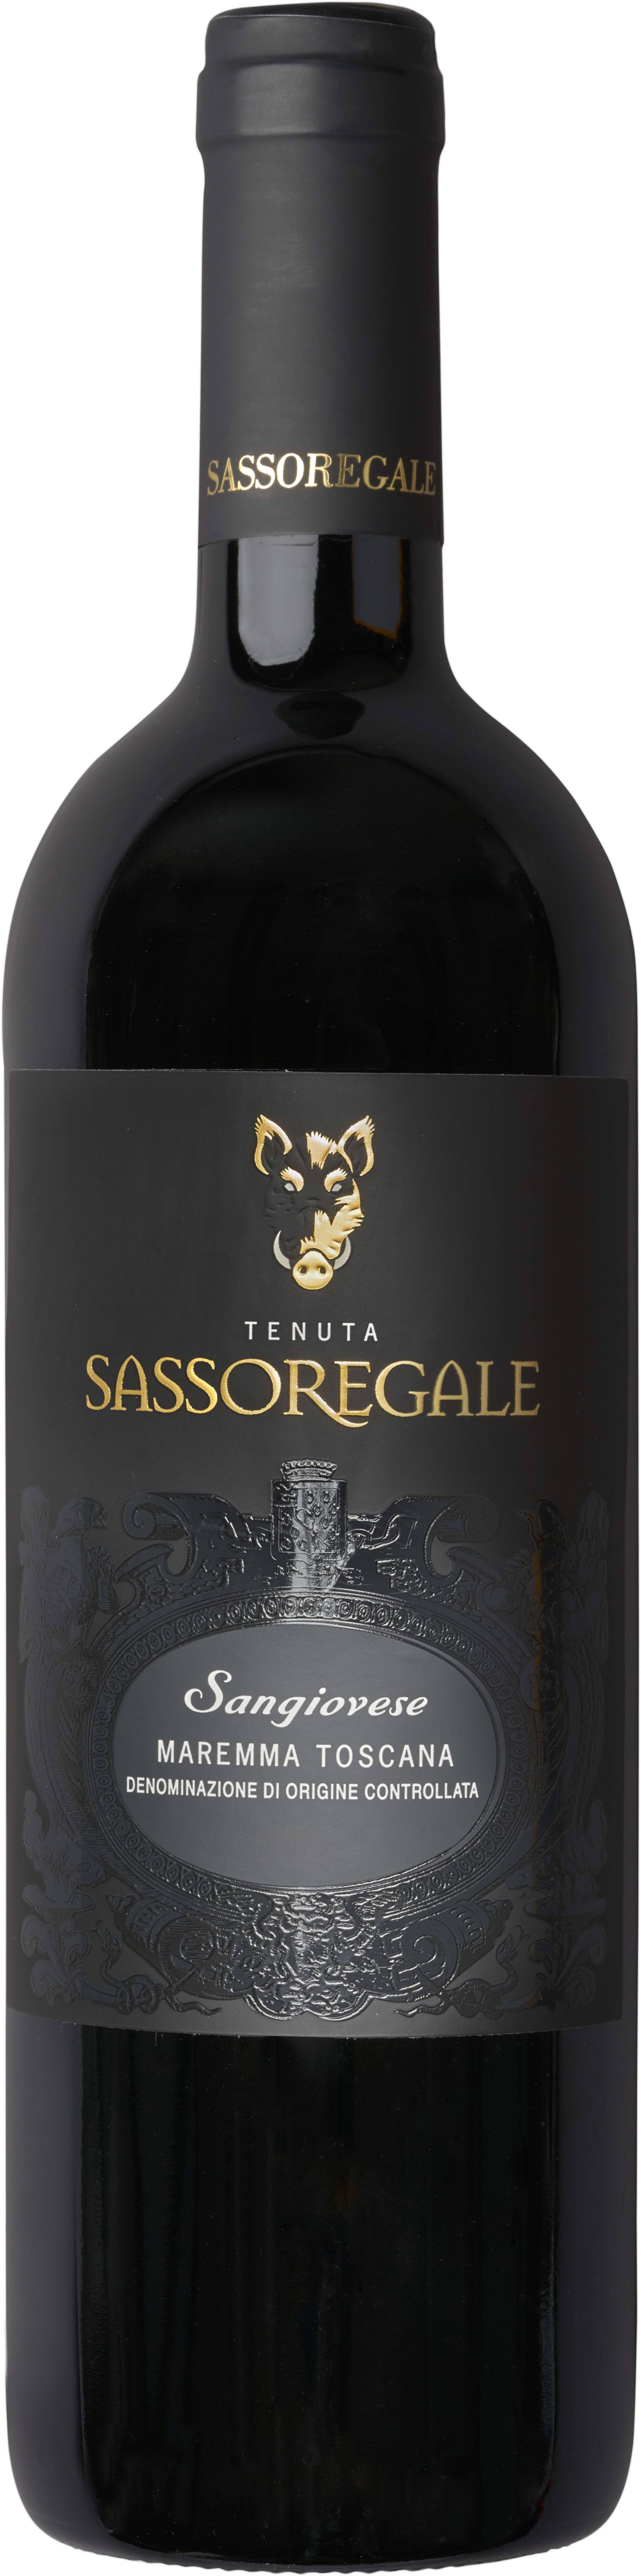 Tenuta Sassoregale Sangiovese, Italy (Vintage Varies) - 750 ml bottle